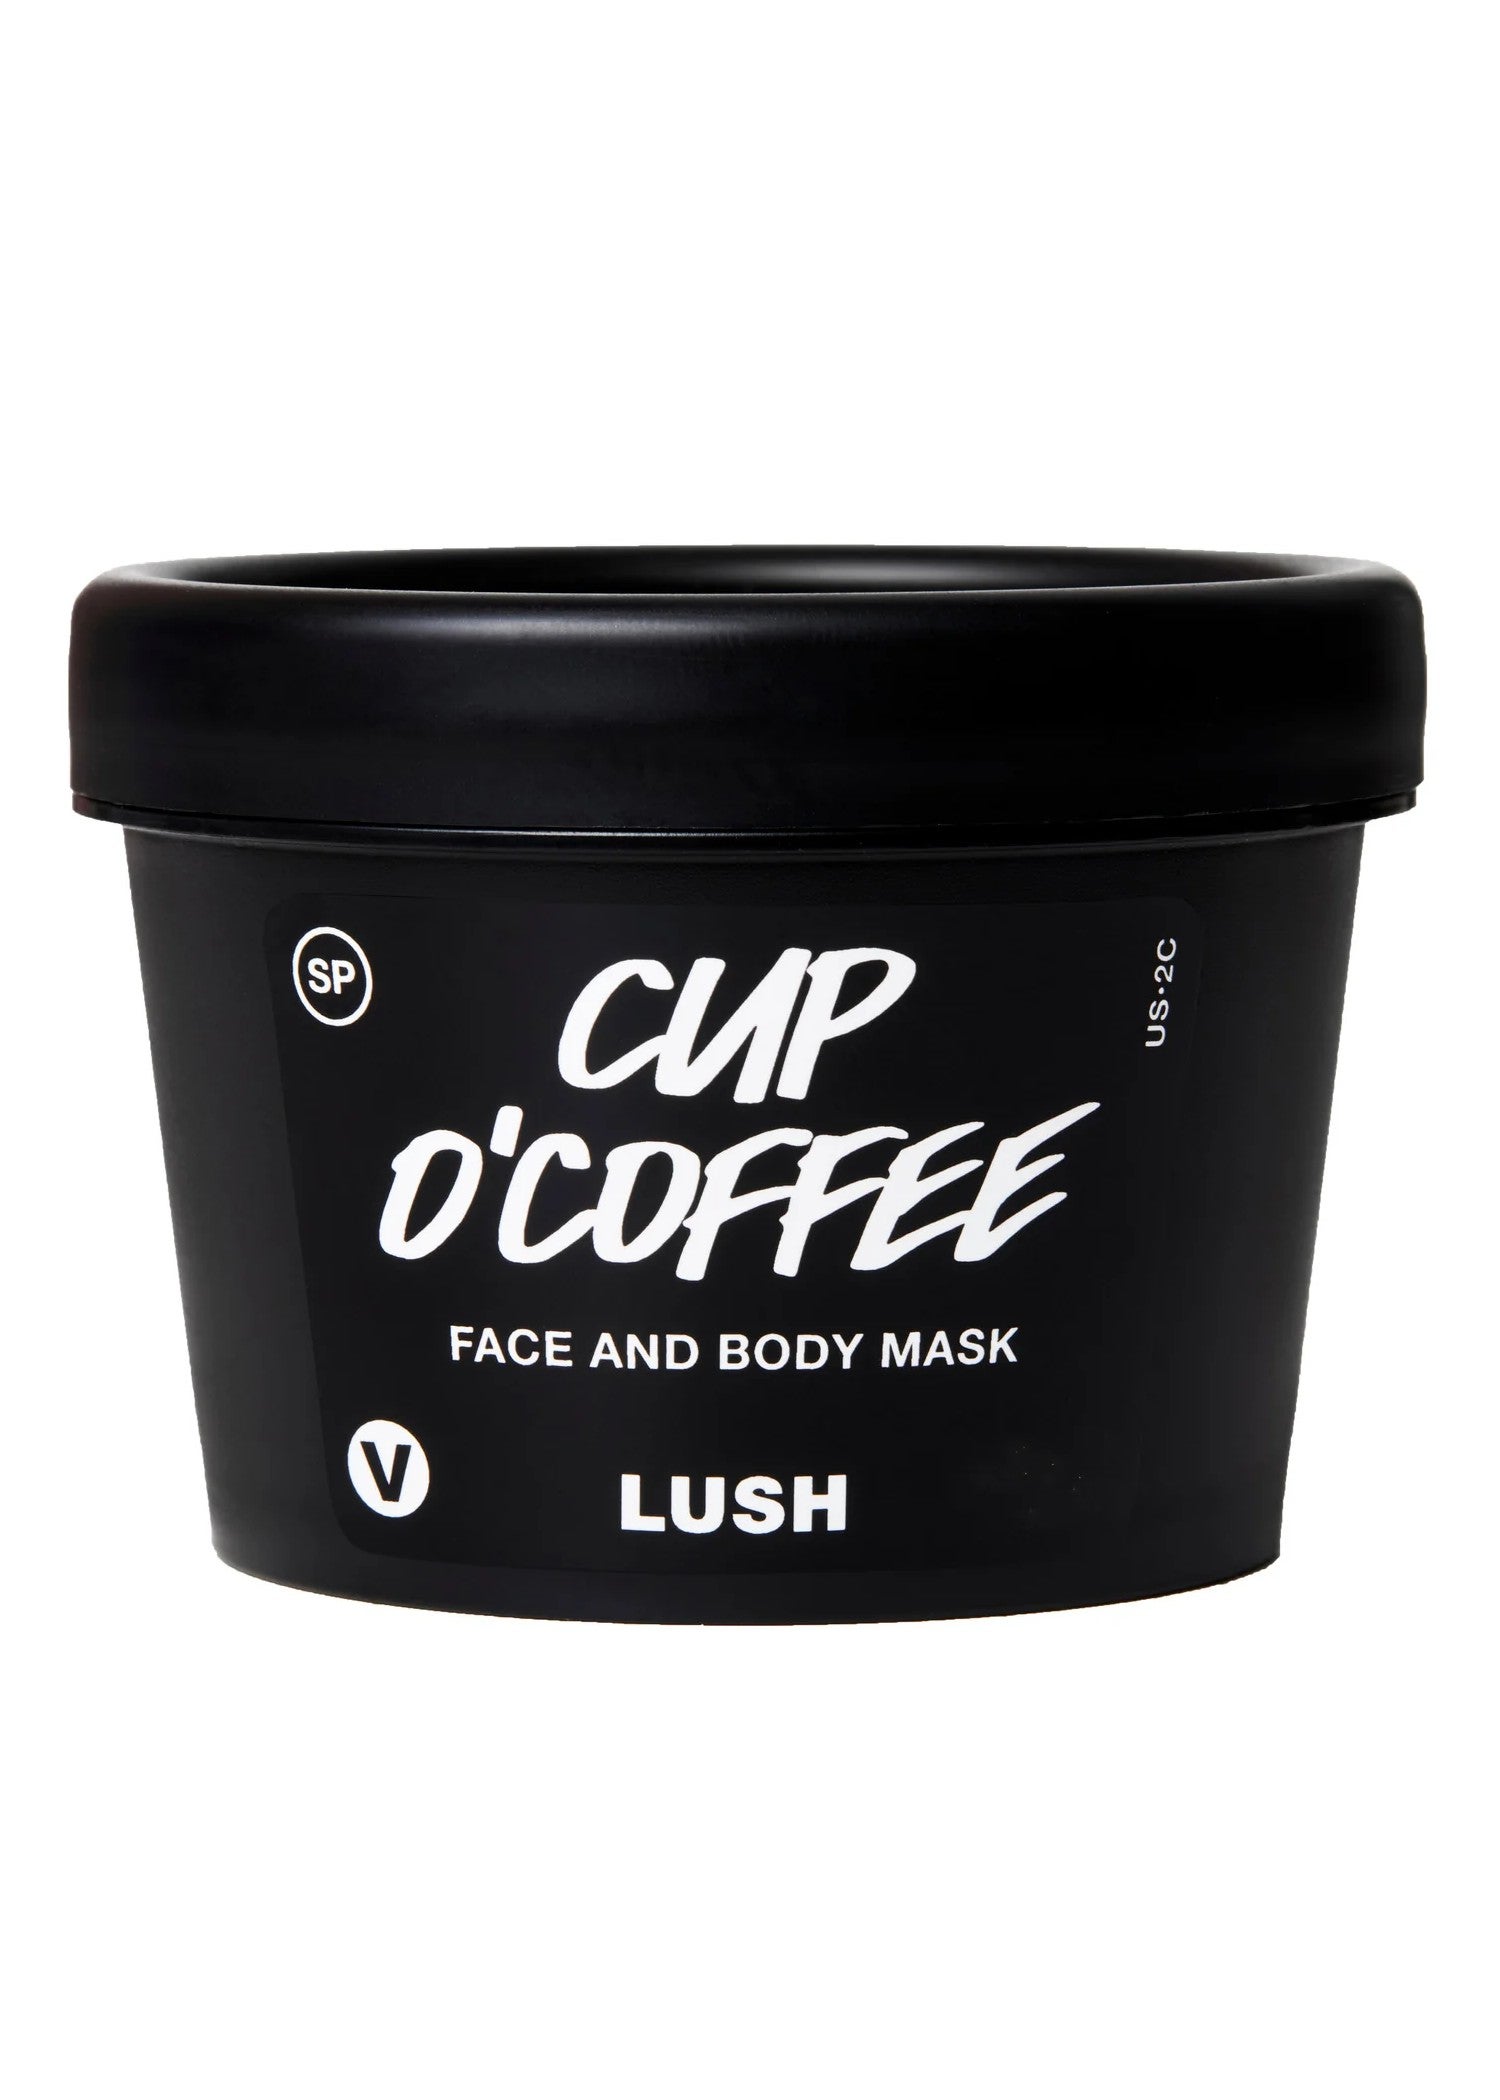 lush cup o'coffee